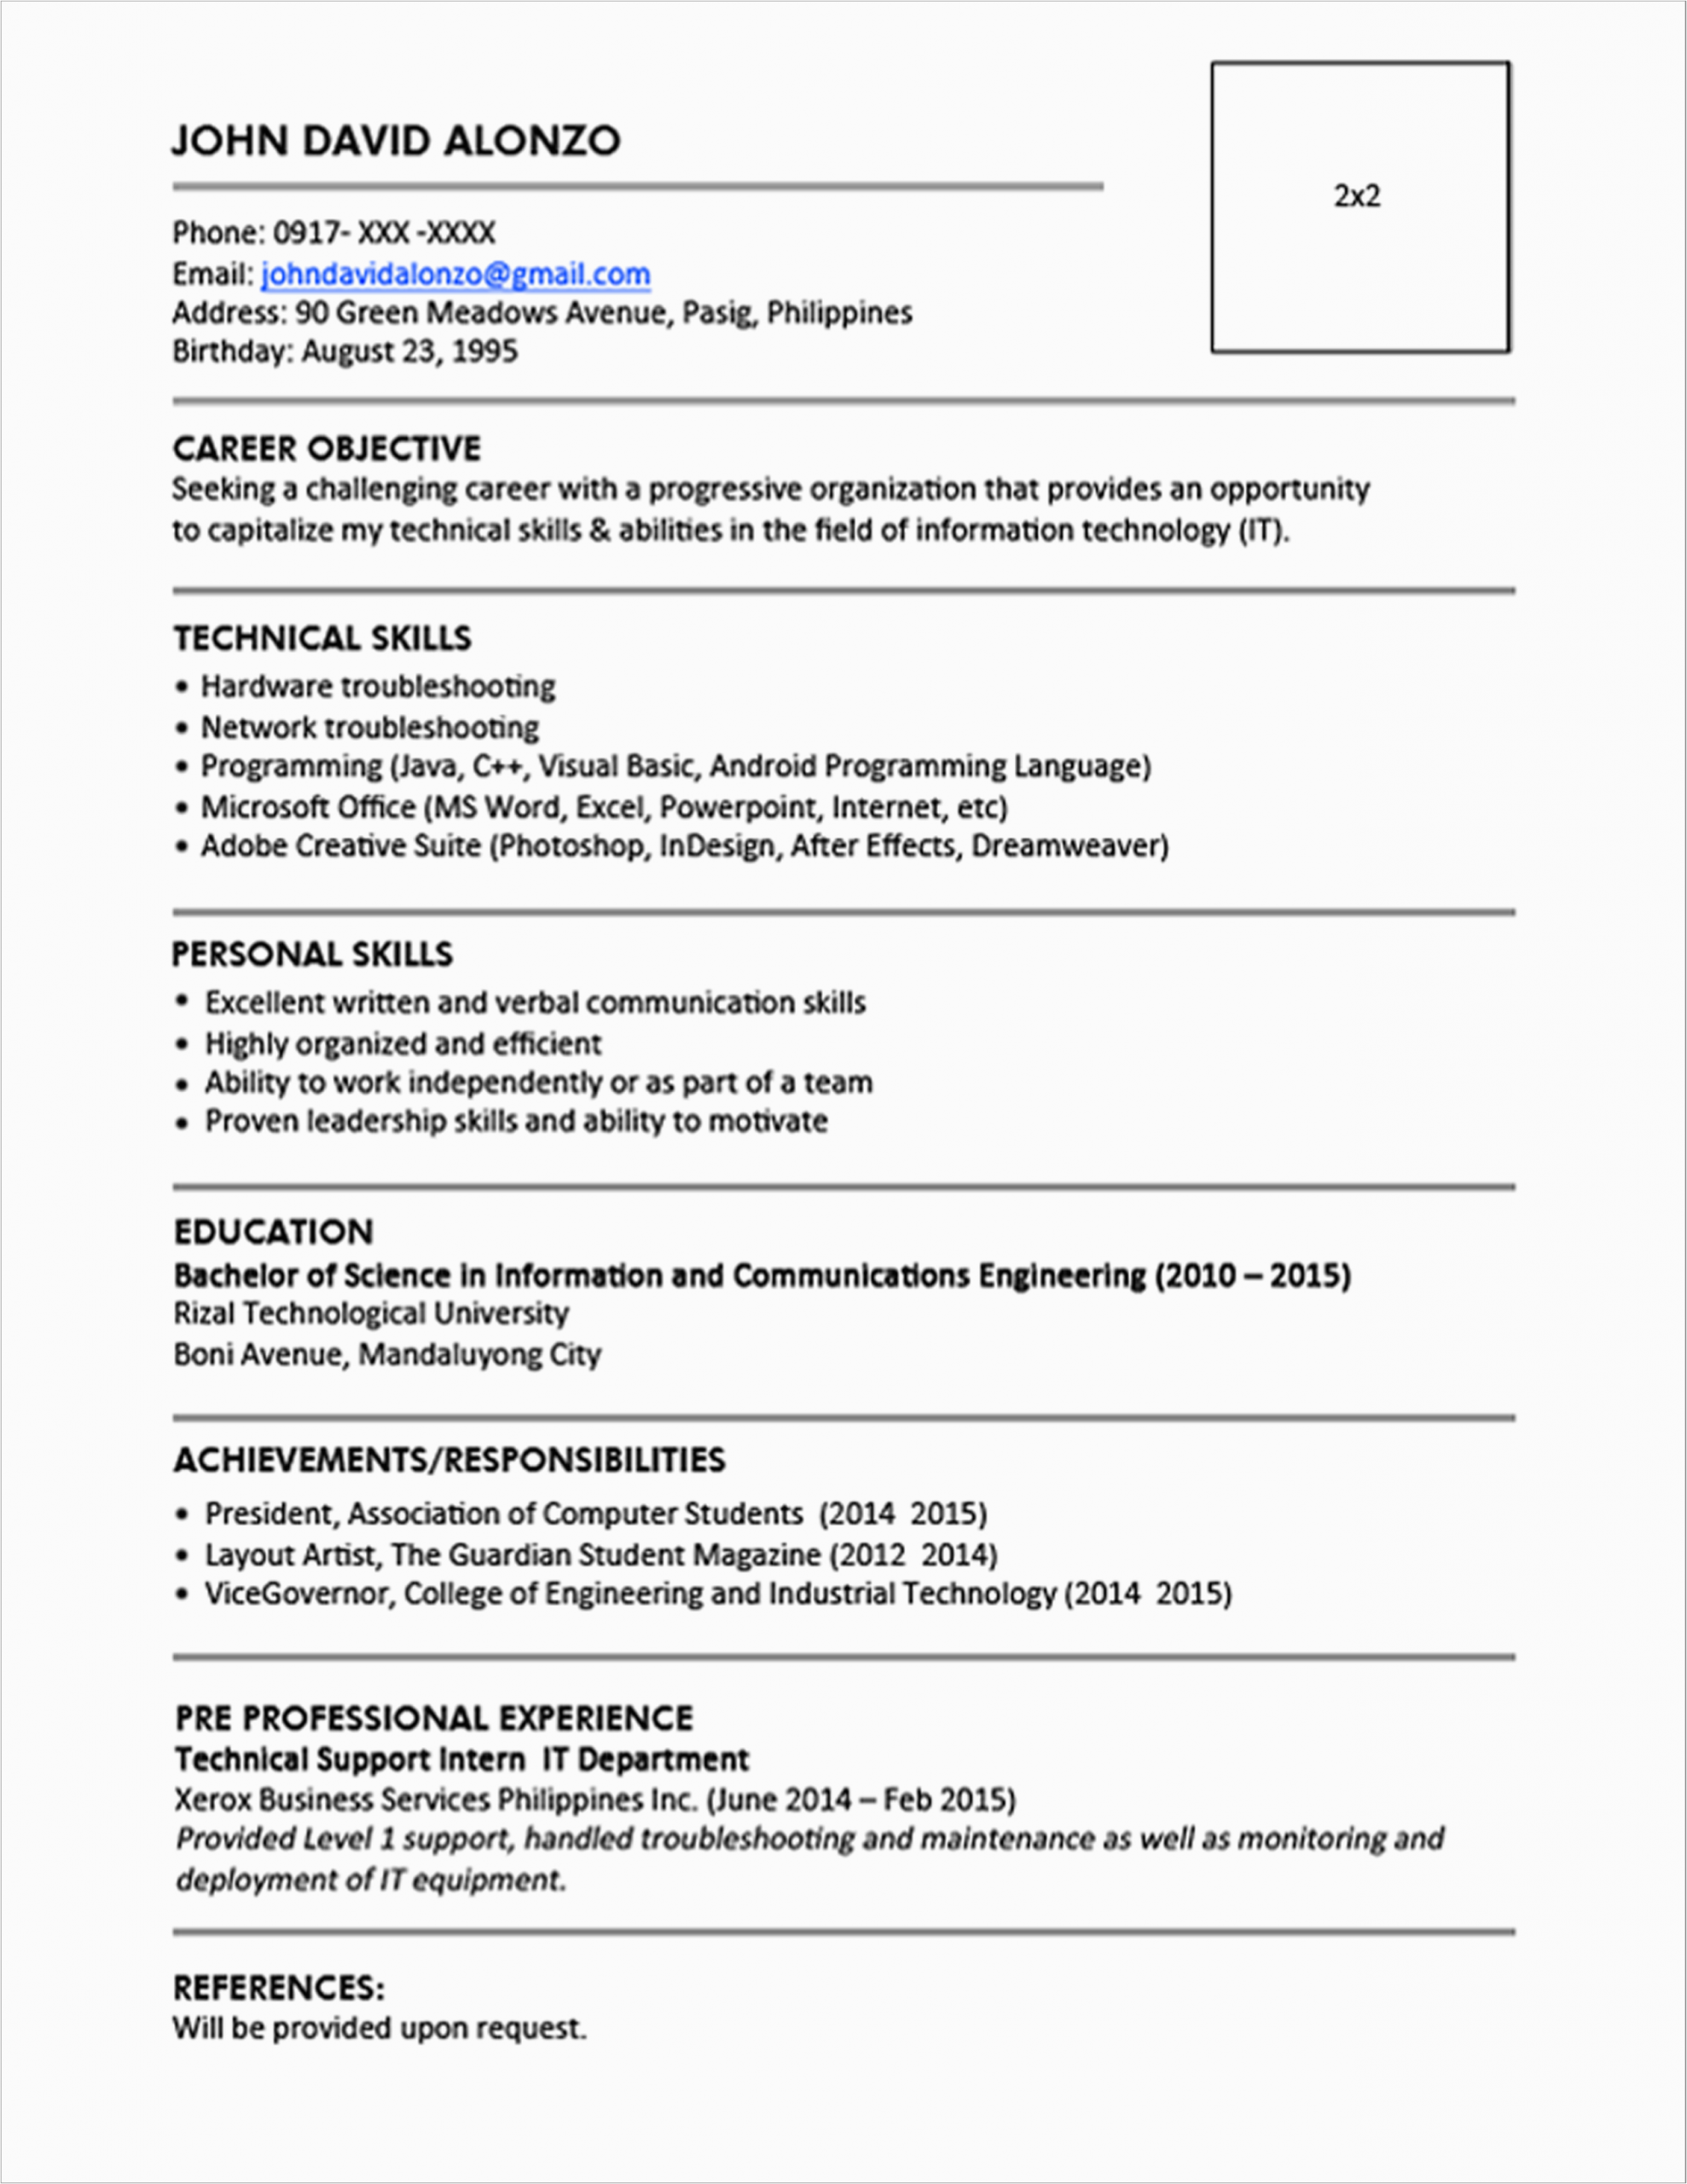 Jobstreet Resume Sample for Fresh Graduate Sample Resume format for Fresh Graduates E Page format